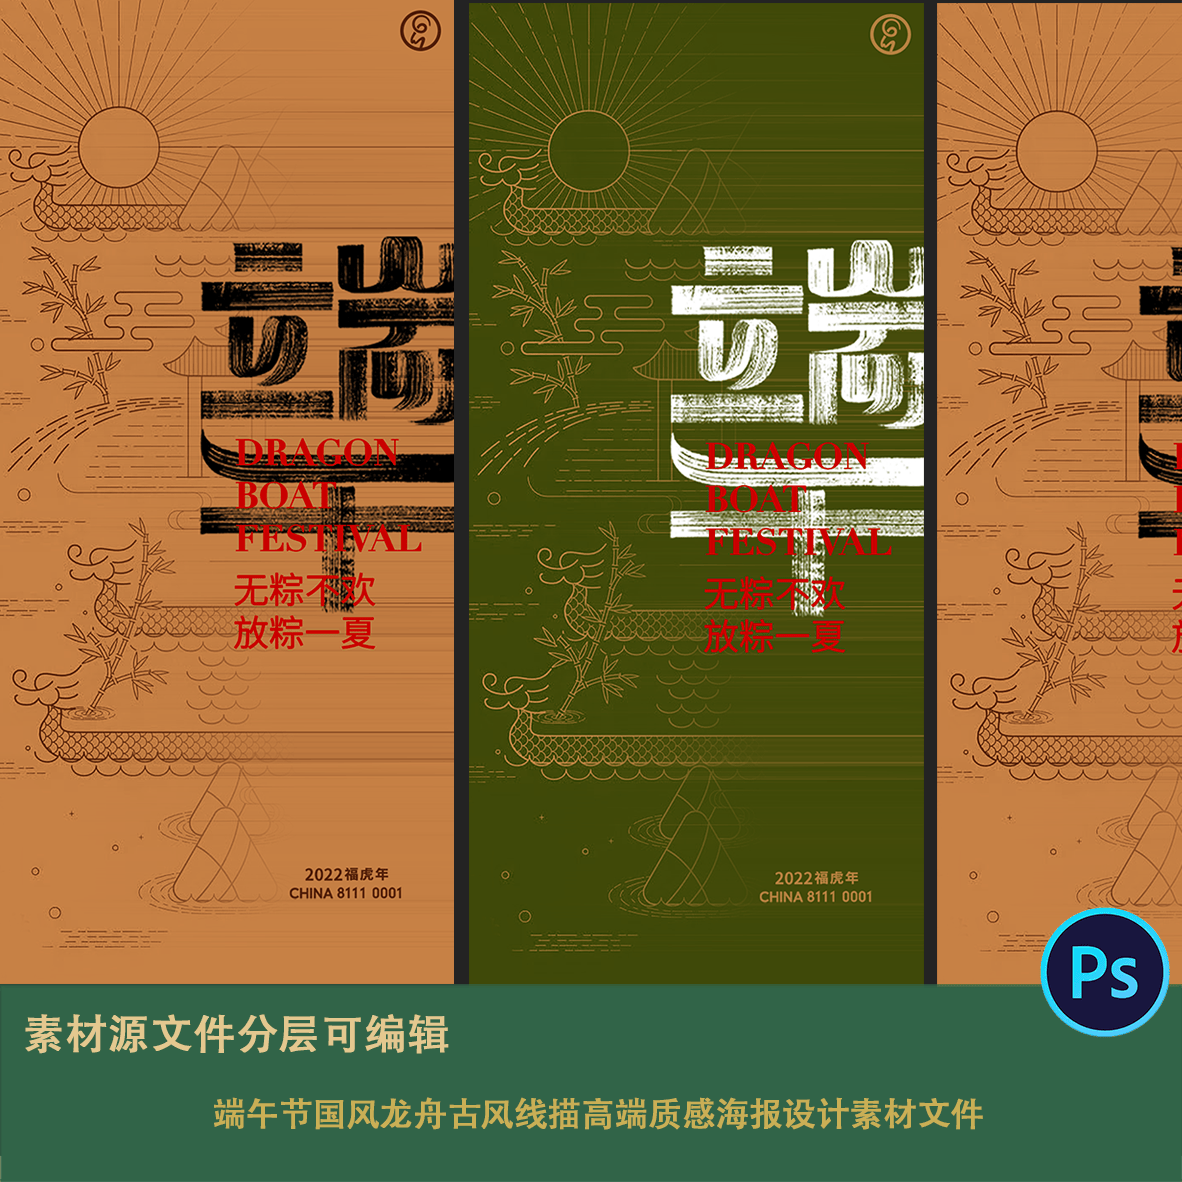 中式端午节毛笔字体国风龙舟古风线描高端质感海报设计素材文件ps